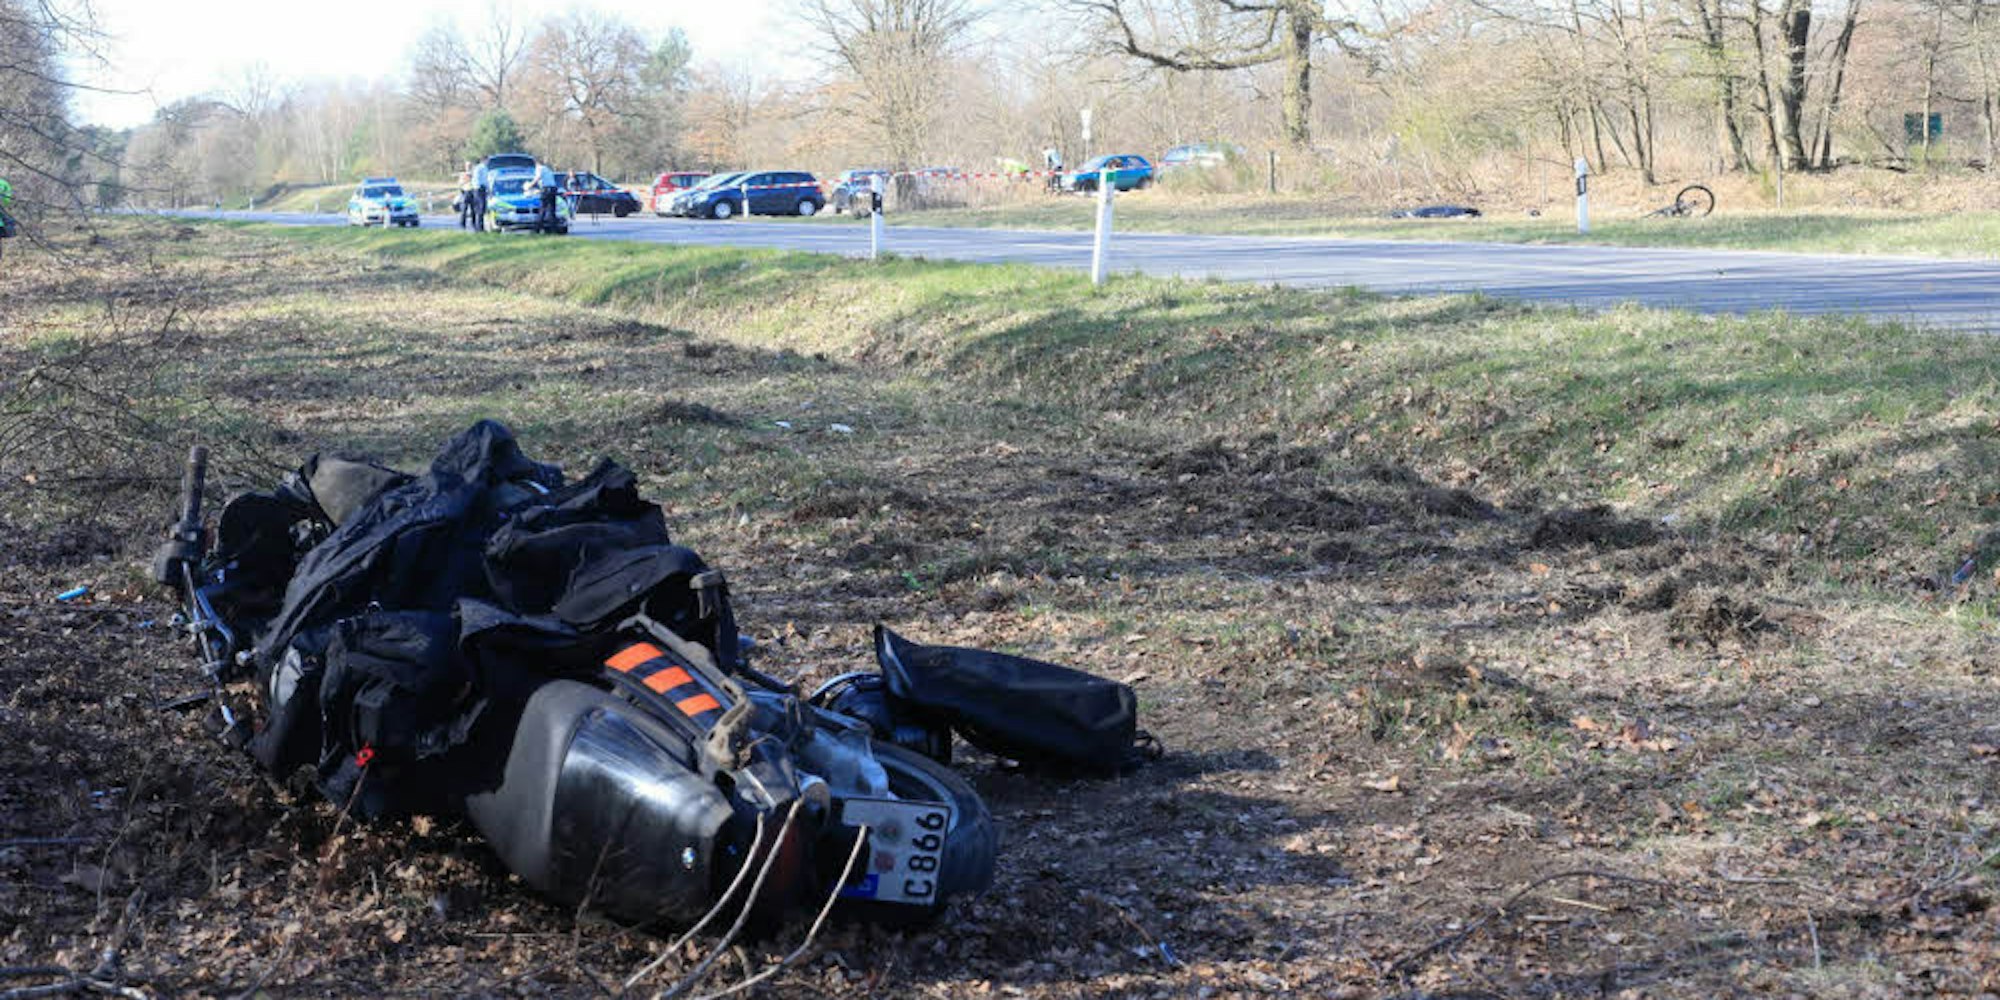 Tödliches Ende einer Tour auf der Alten Kölner Landstraße: Das Motorrad stieß beim Überholen mit einem Rennrad zusammen, der 32-jährige Radfahrer starb noch am Unfallort.